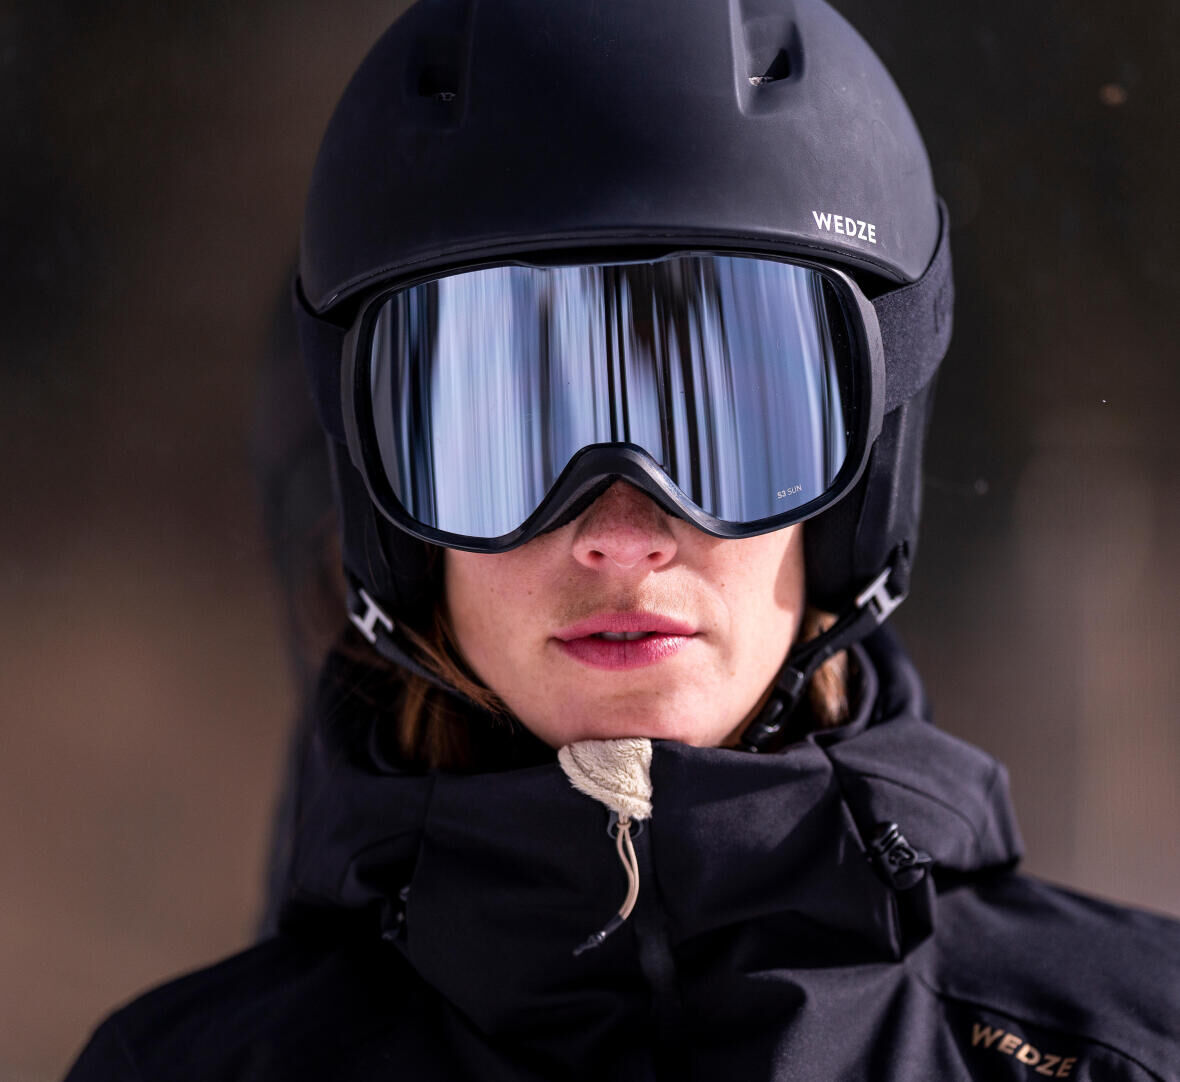 woman wearing ski goggles